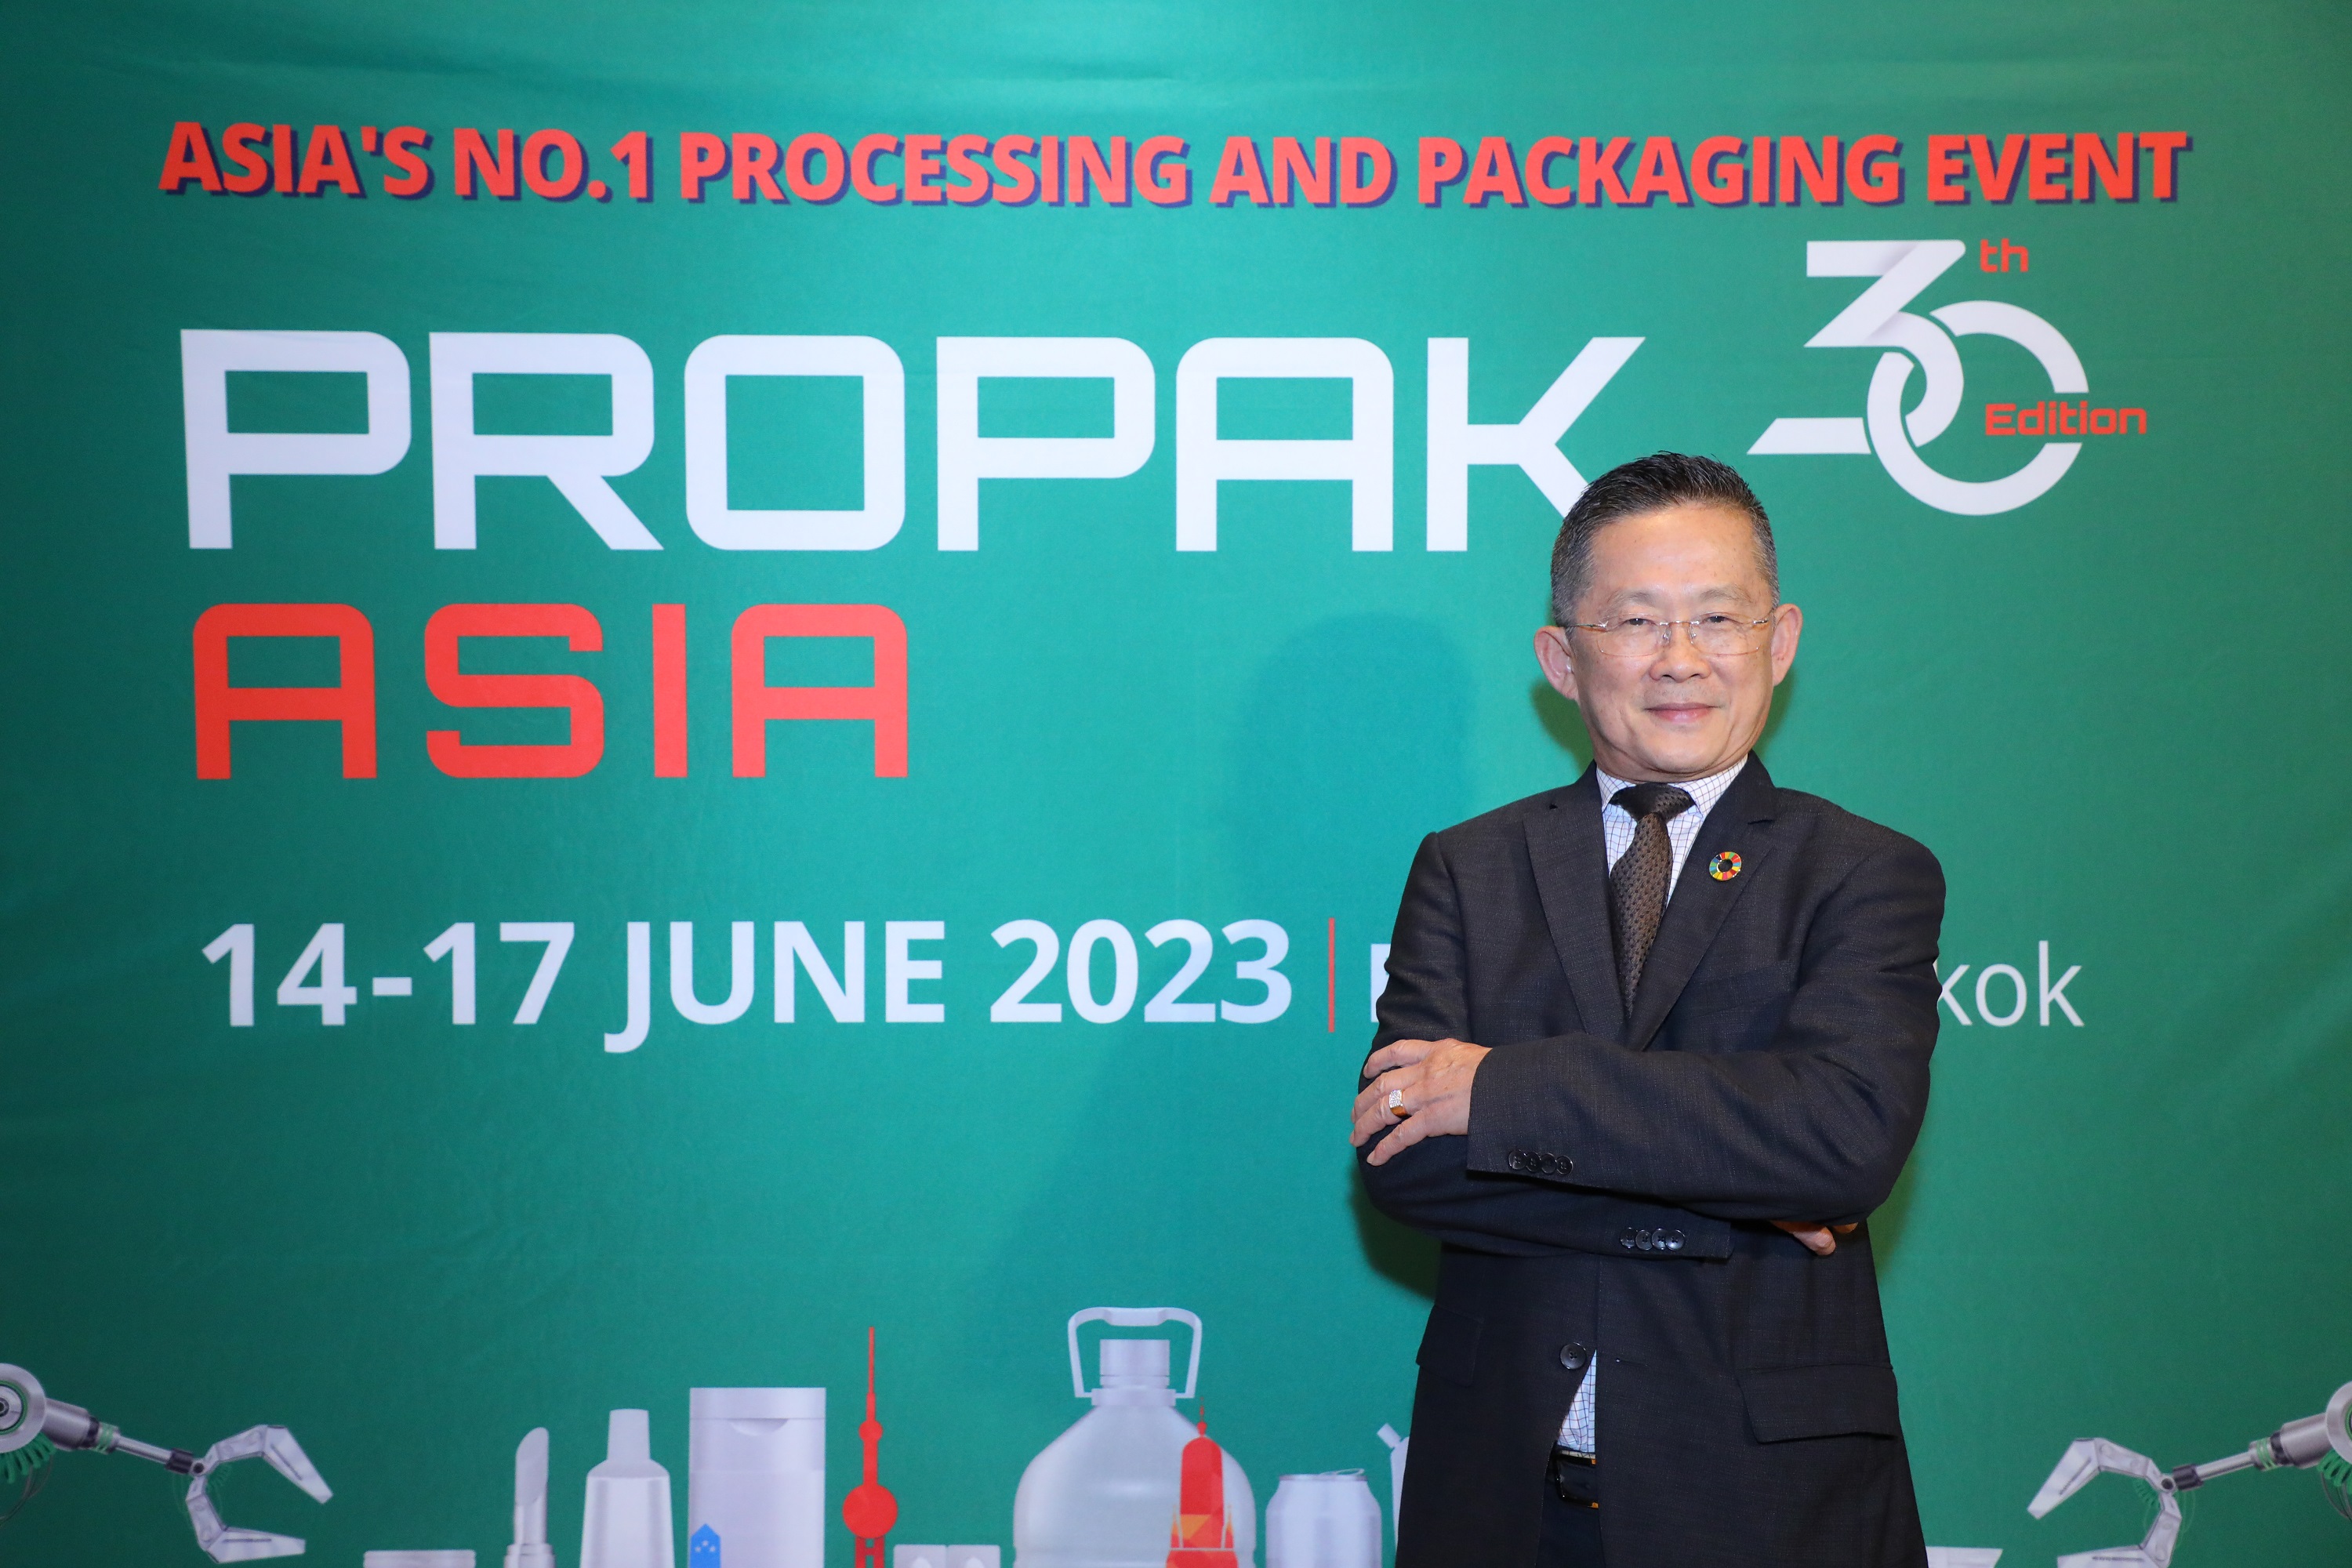 “อินฟอร์มา มาร์เก็ตส์” มั่นใจ “ProPak Asia 2023” คึกคัก ปรับโฉม 8 โซน ต้อนรับผู้ชม 4 หมื่นคน ฉลองครบ 30 ปี การจัดงาน 14 – 17 มิถุนายนนี้ ที่ไบเทค บางนา